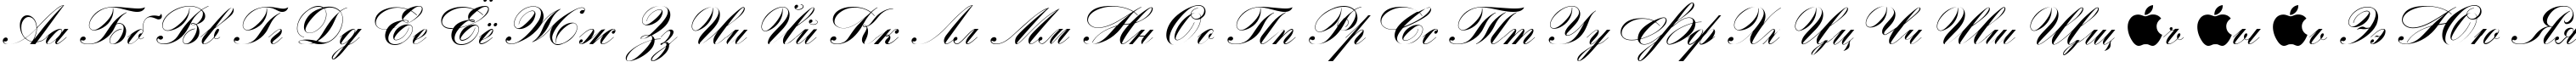 Пример написания русского алфавита шрифтом Romantica script